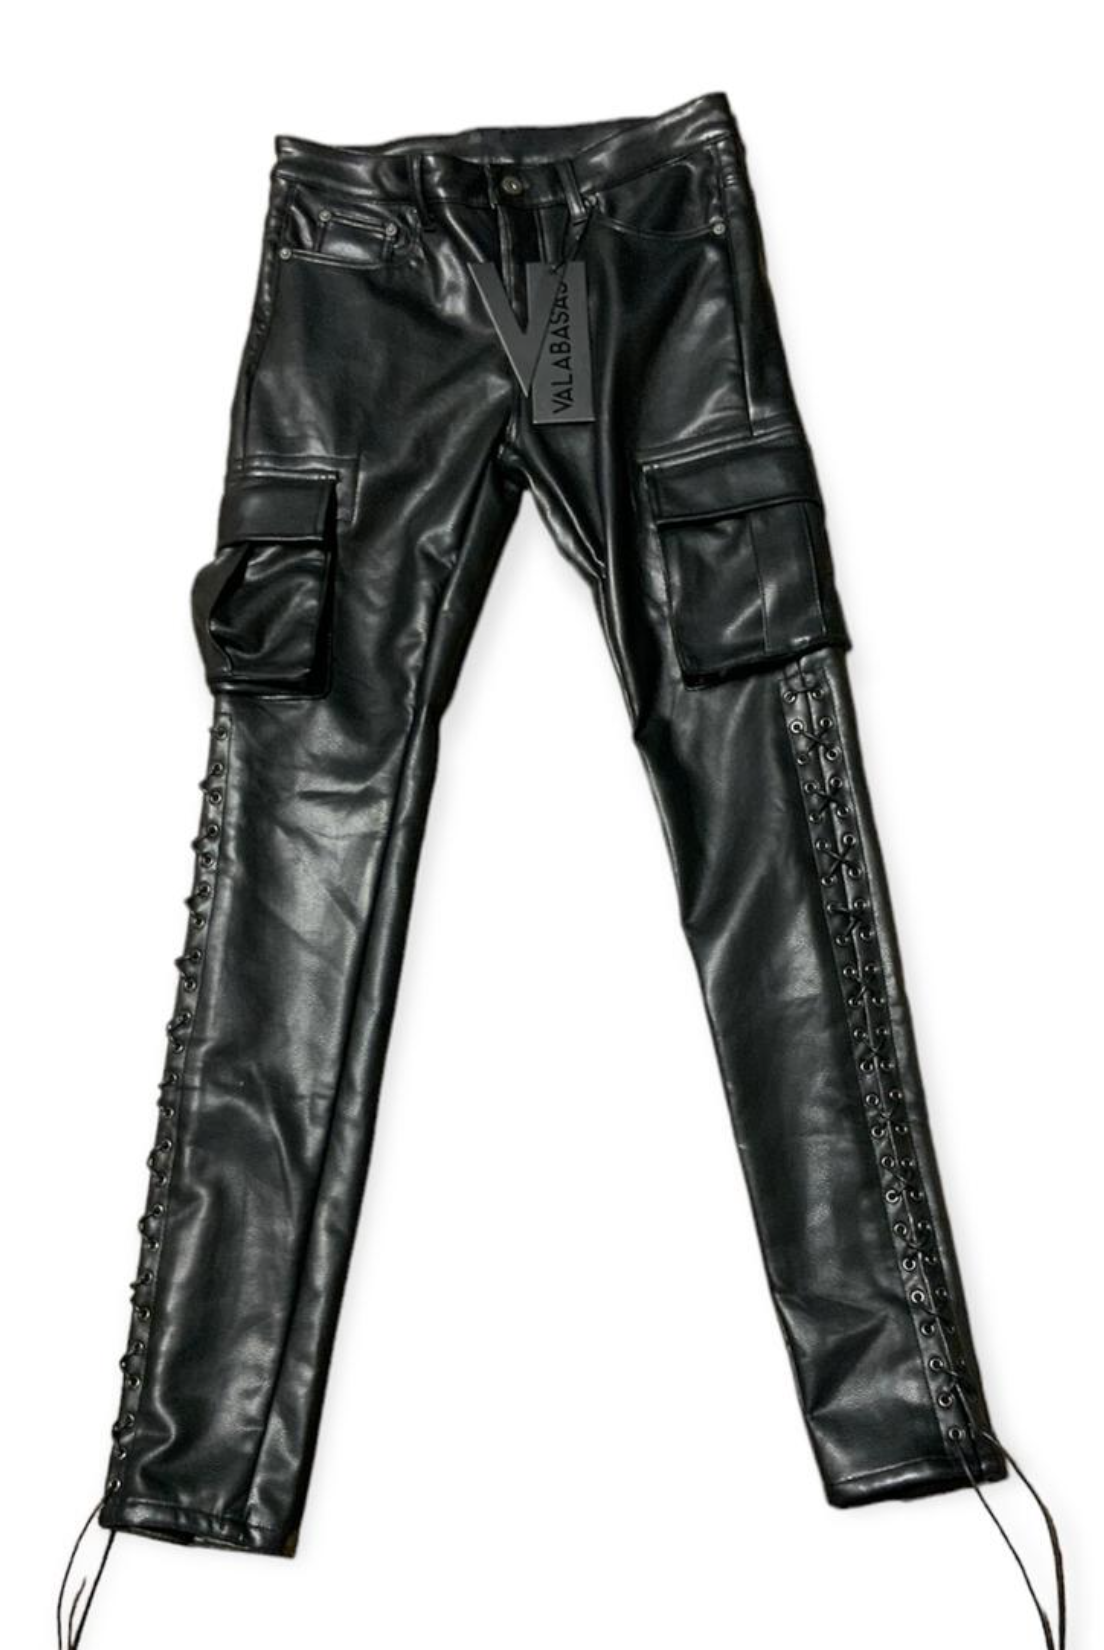 Valabasas Leather Stack Pants